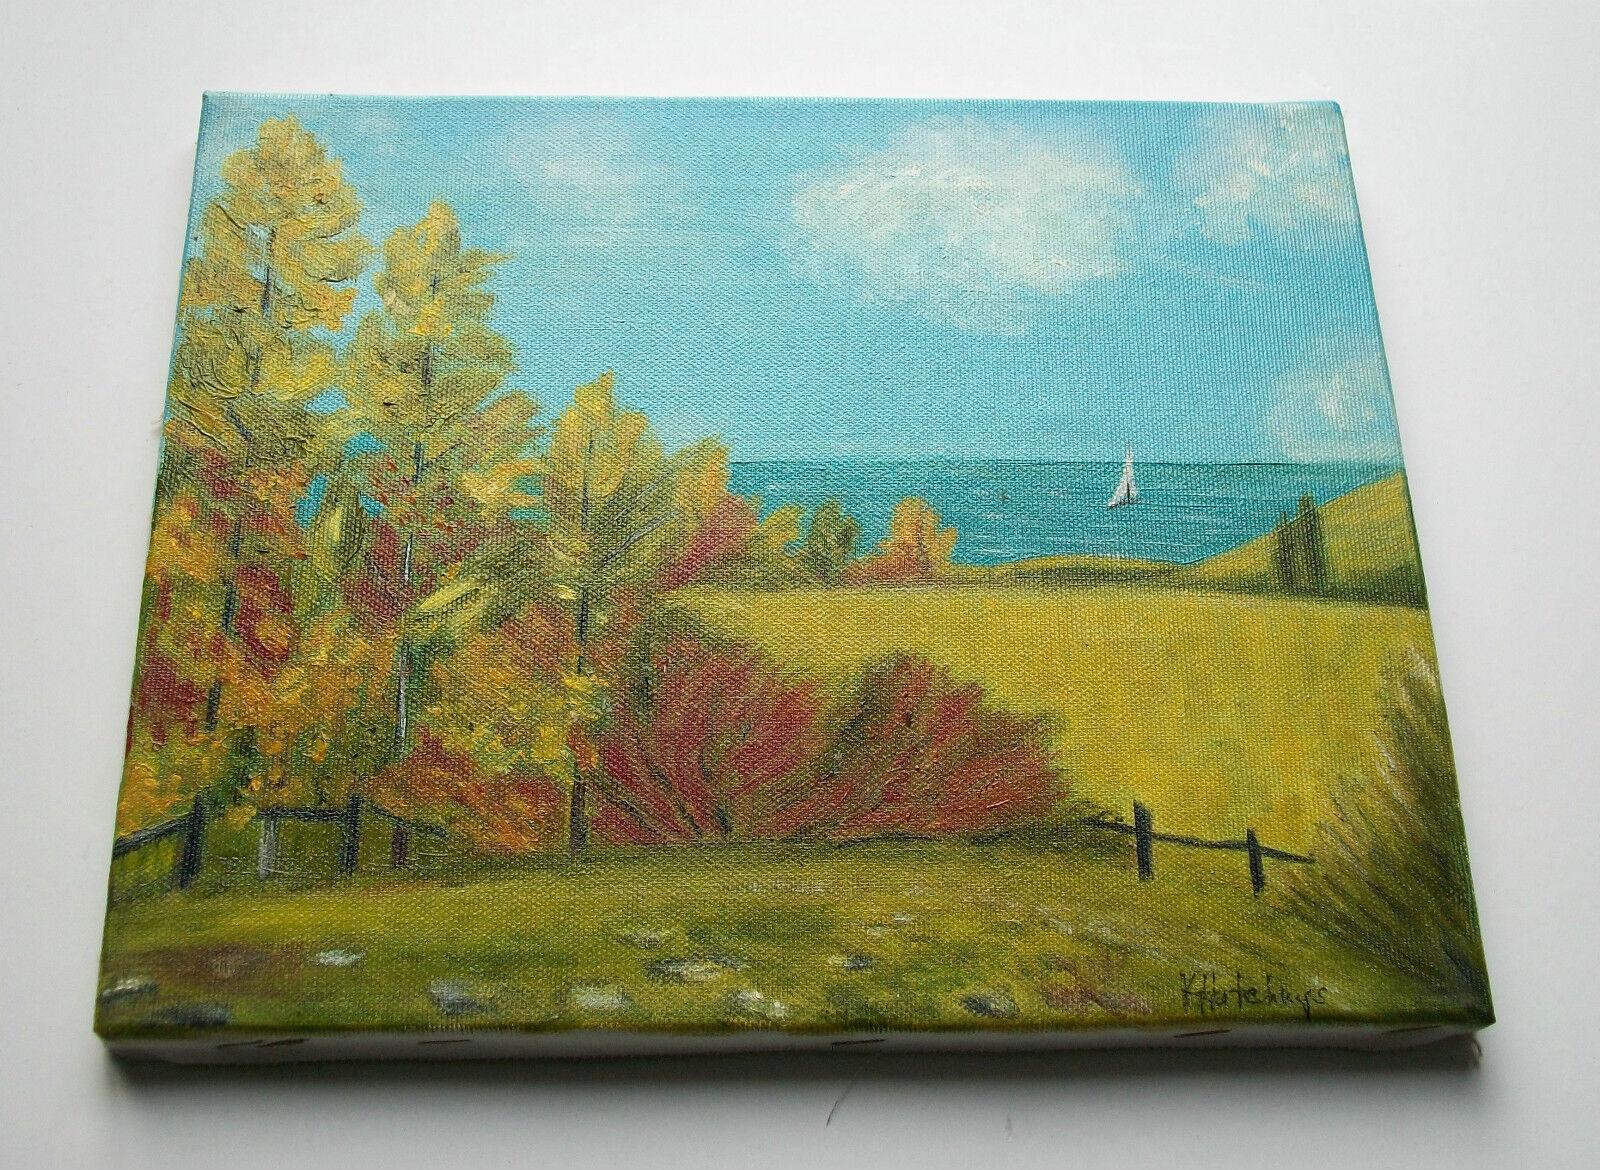 Canvas K. Hutchings - 'Lac Léman' - Vintage Landscape Painting - Unframed - circa 1990 For Sale